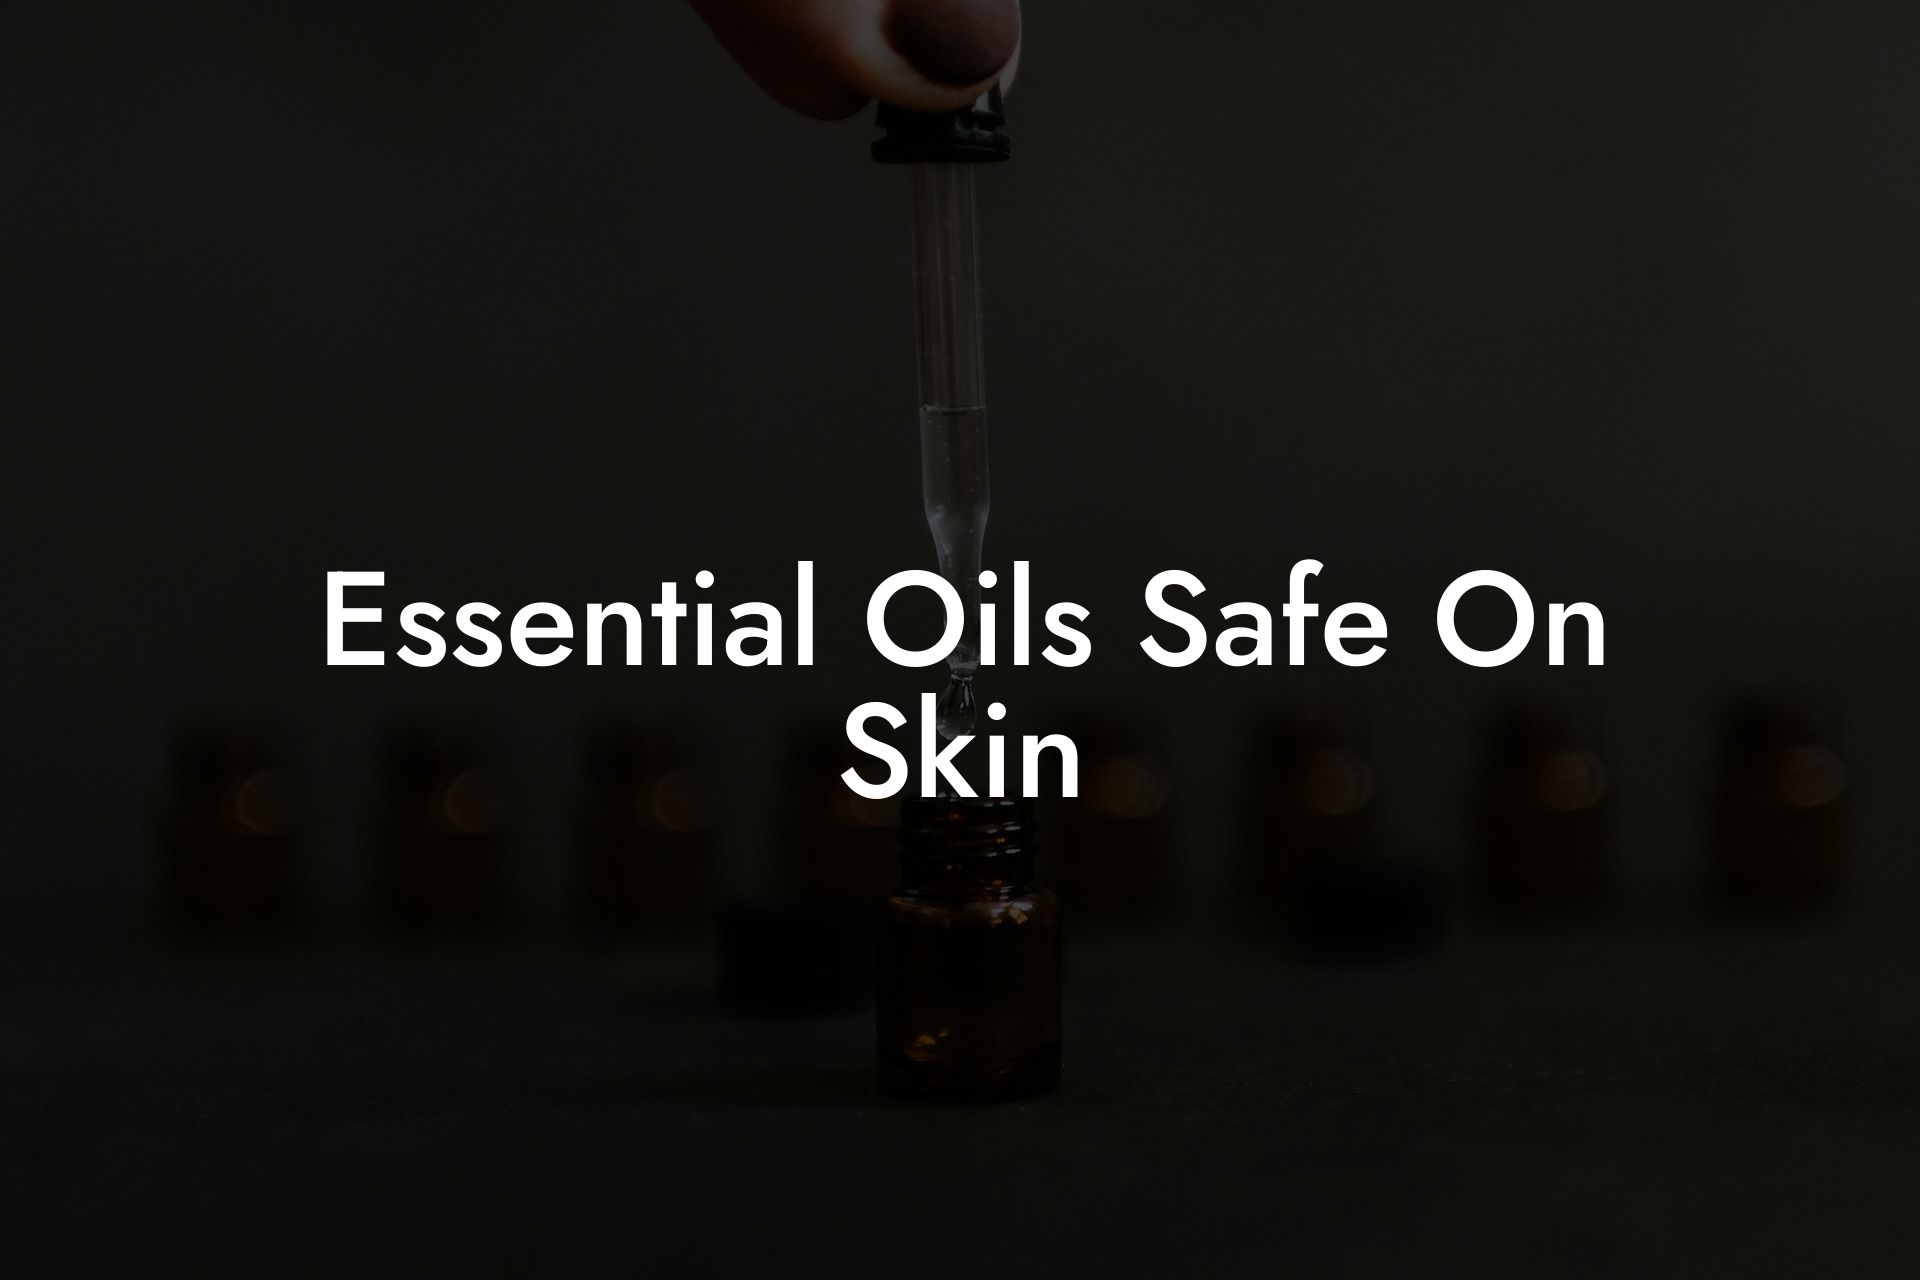 Essential Oils Safe On Skin